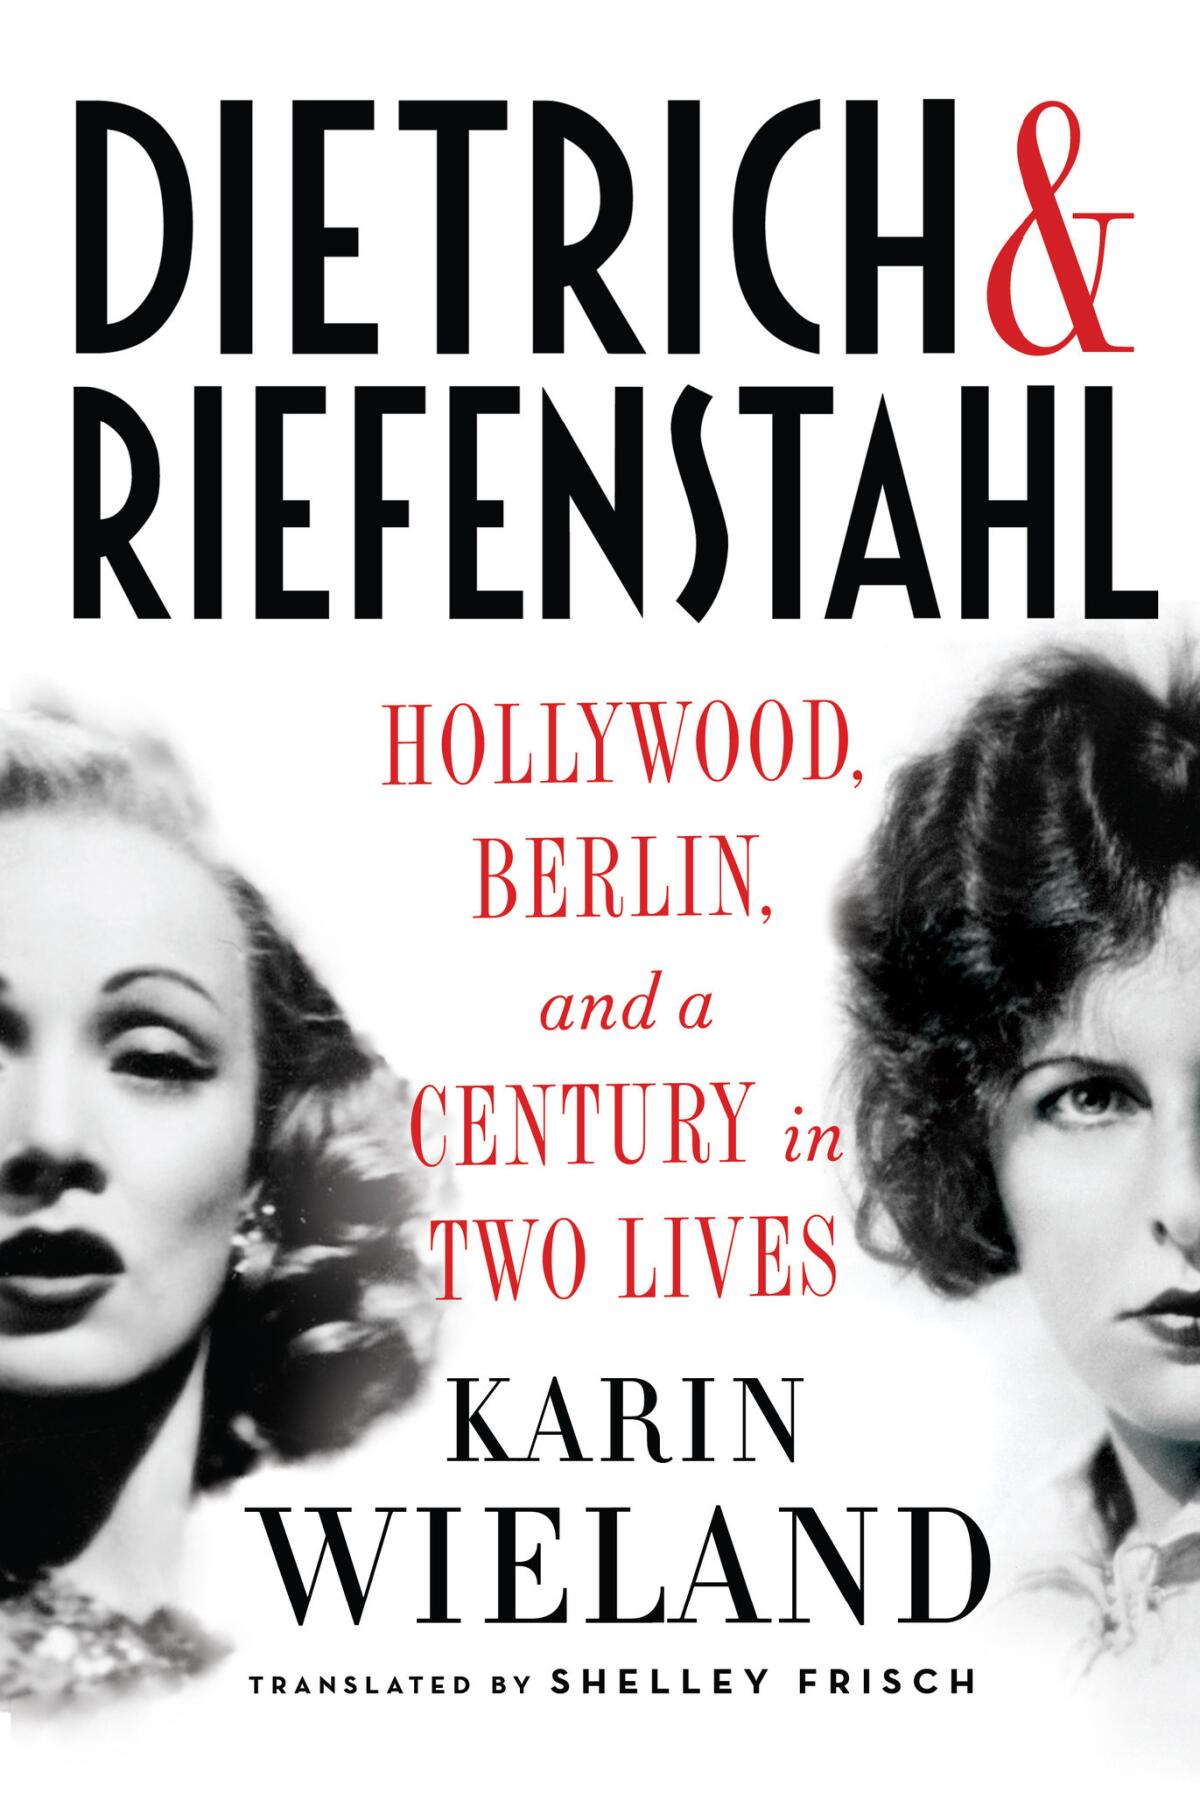 "Dietrich and Riefenstahl"